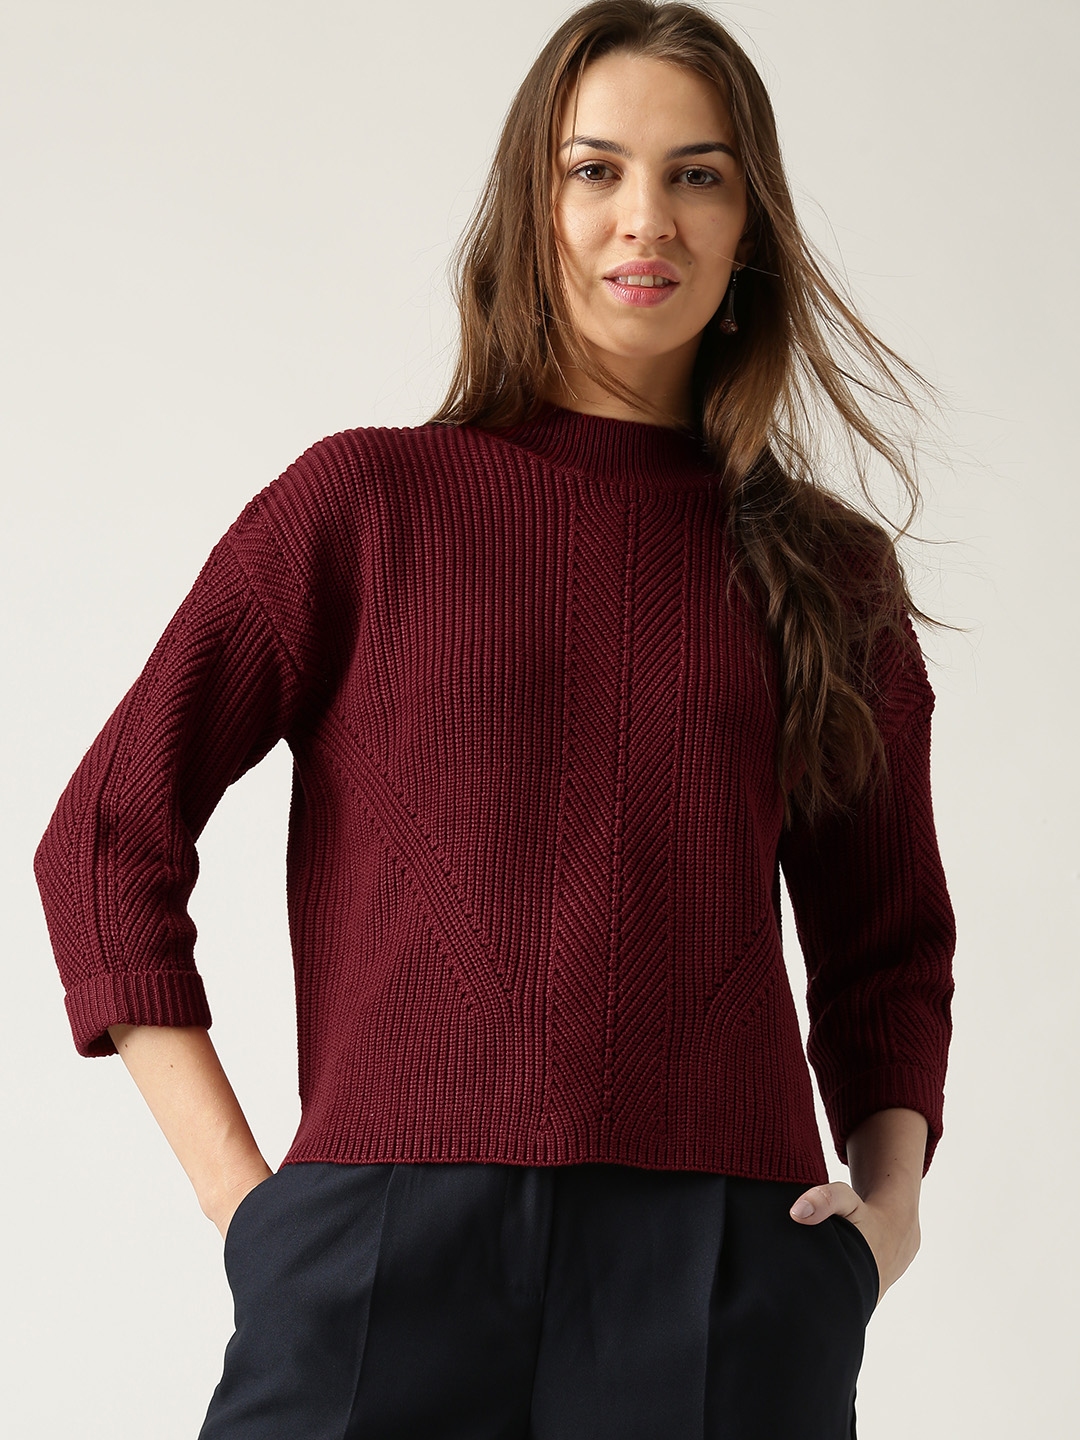 Buy ESPRIT Women Maroon Self Striped Sweater - Sweaters for Women